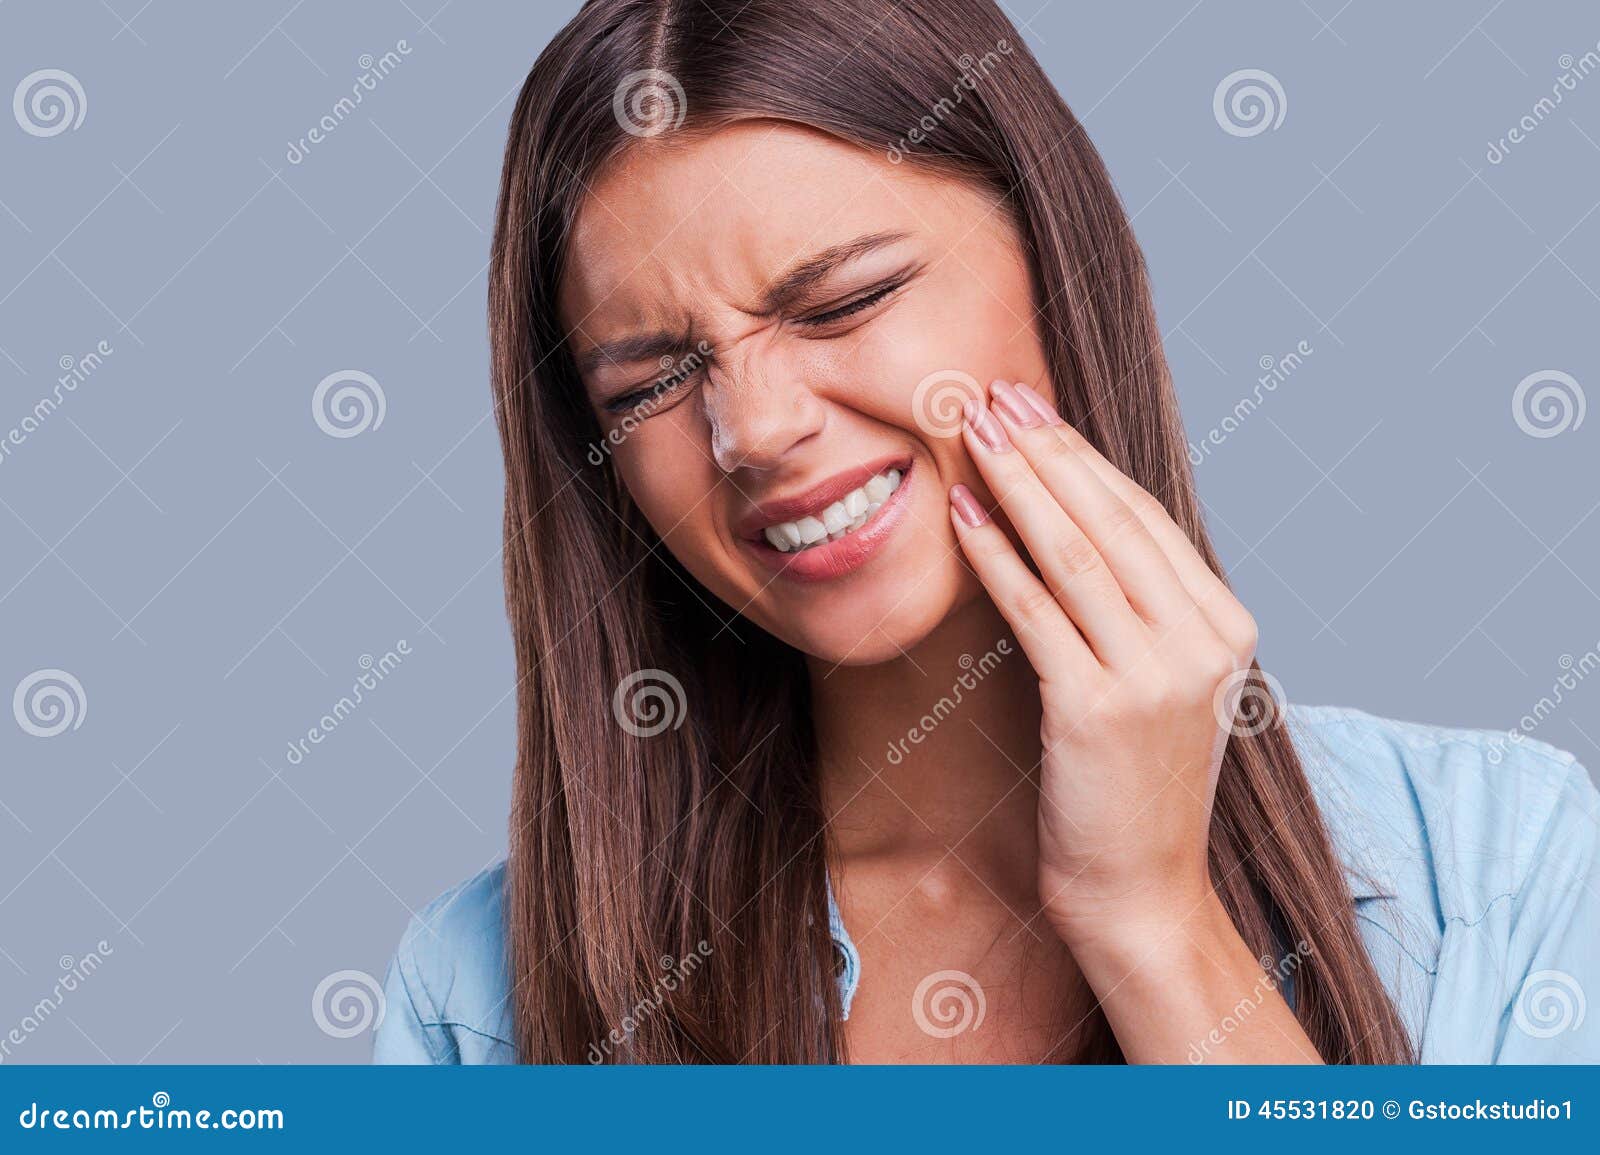 牙疼图片可怜带字女人,牙痛的图片可爱一点的 - 伤感说说吧